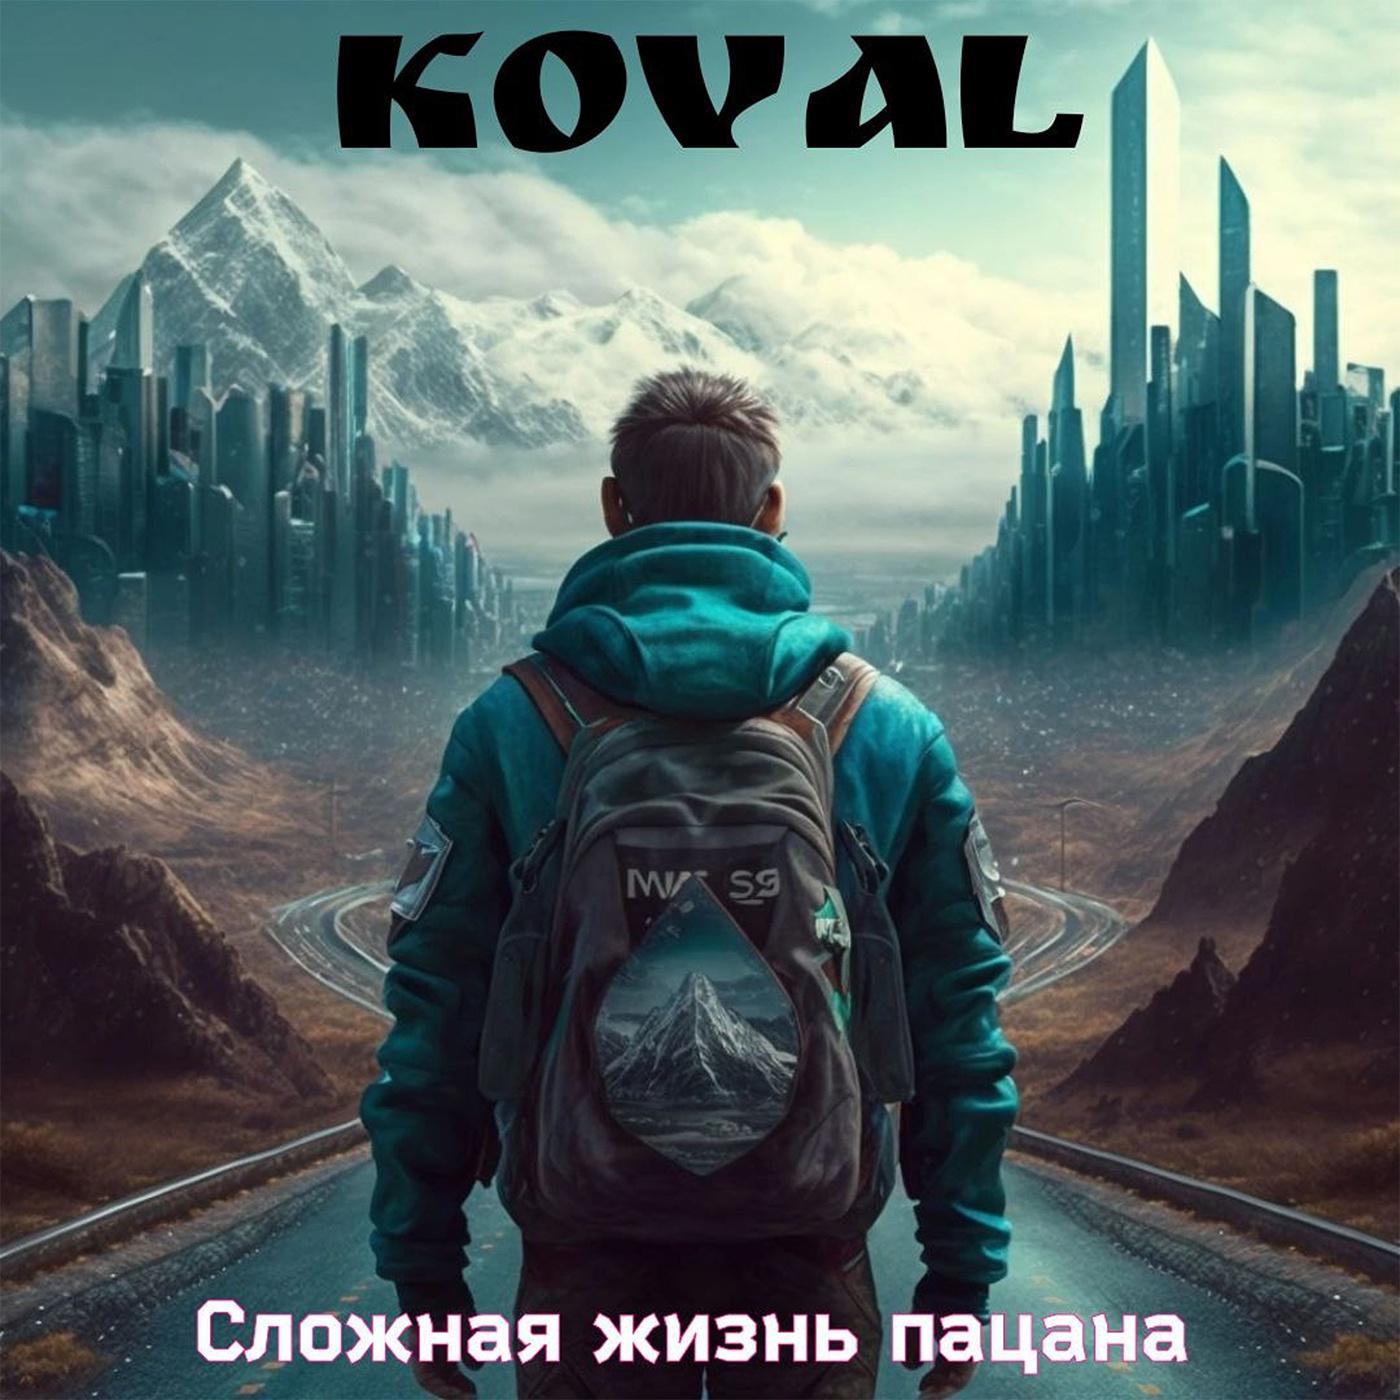 Koval - Сложная жизнь пацана